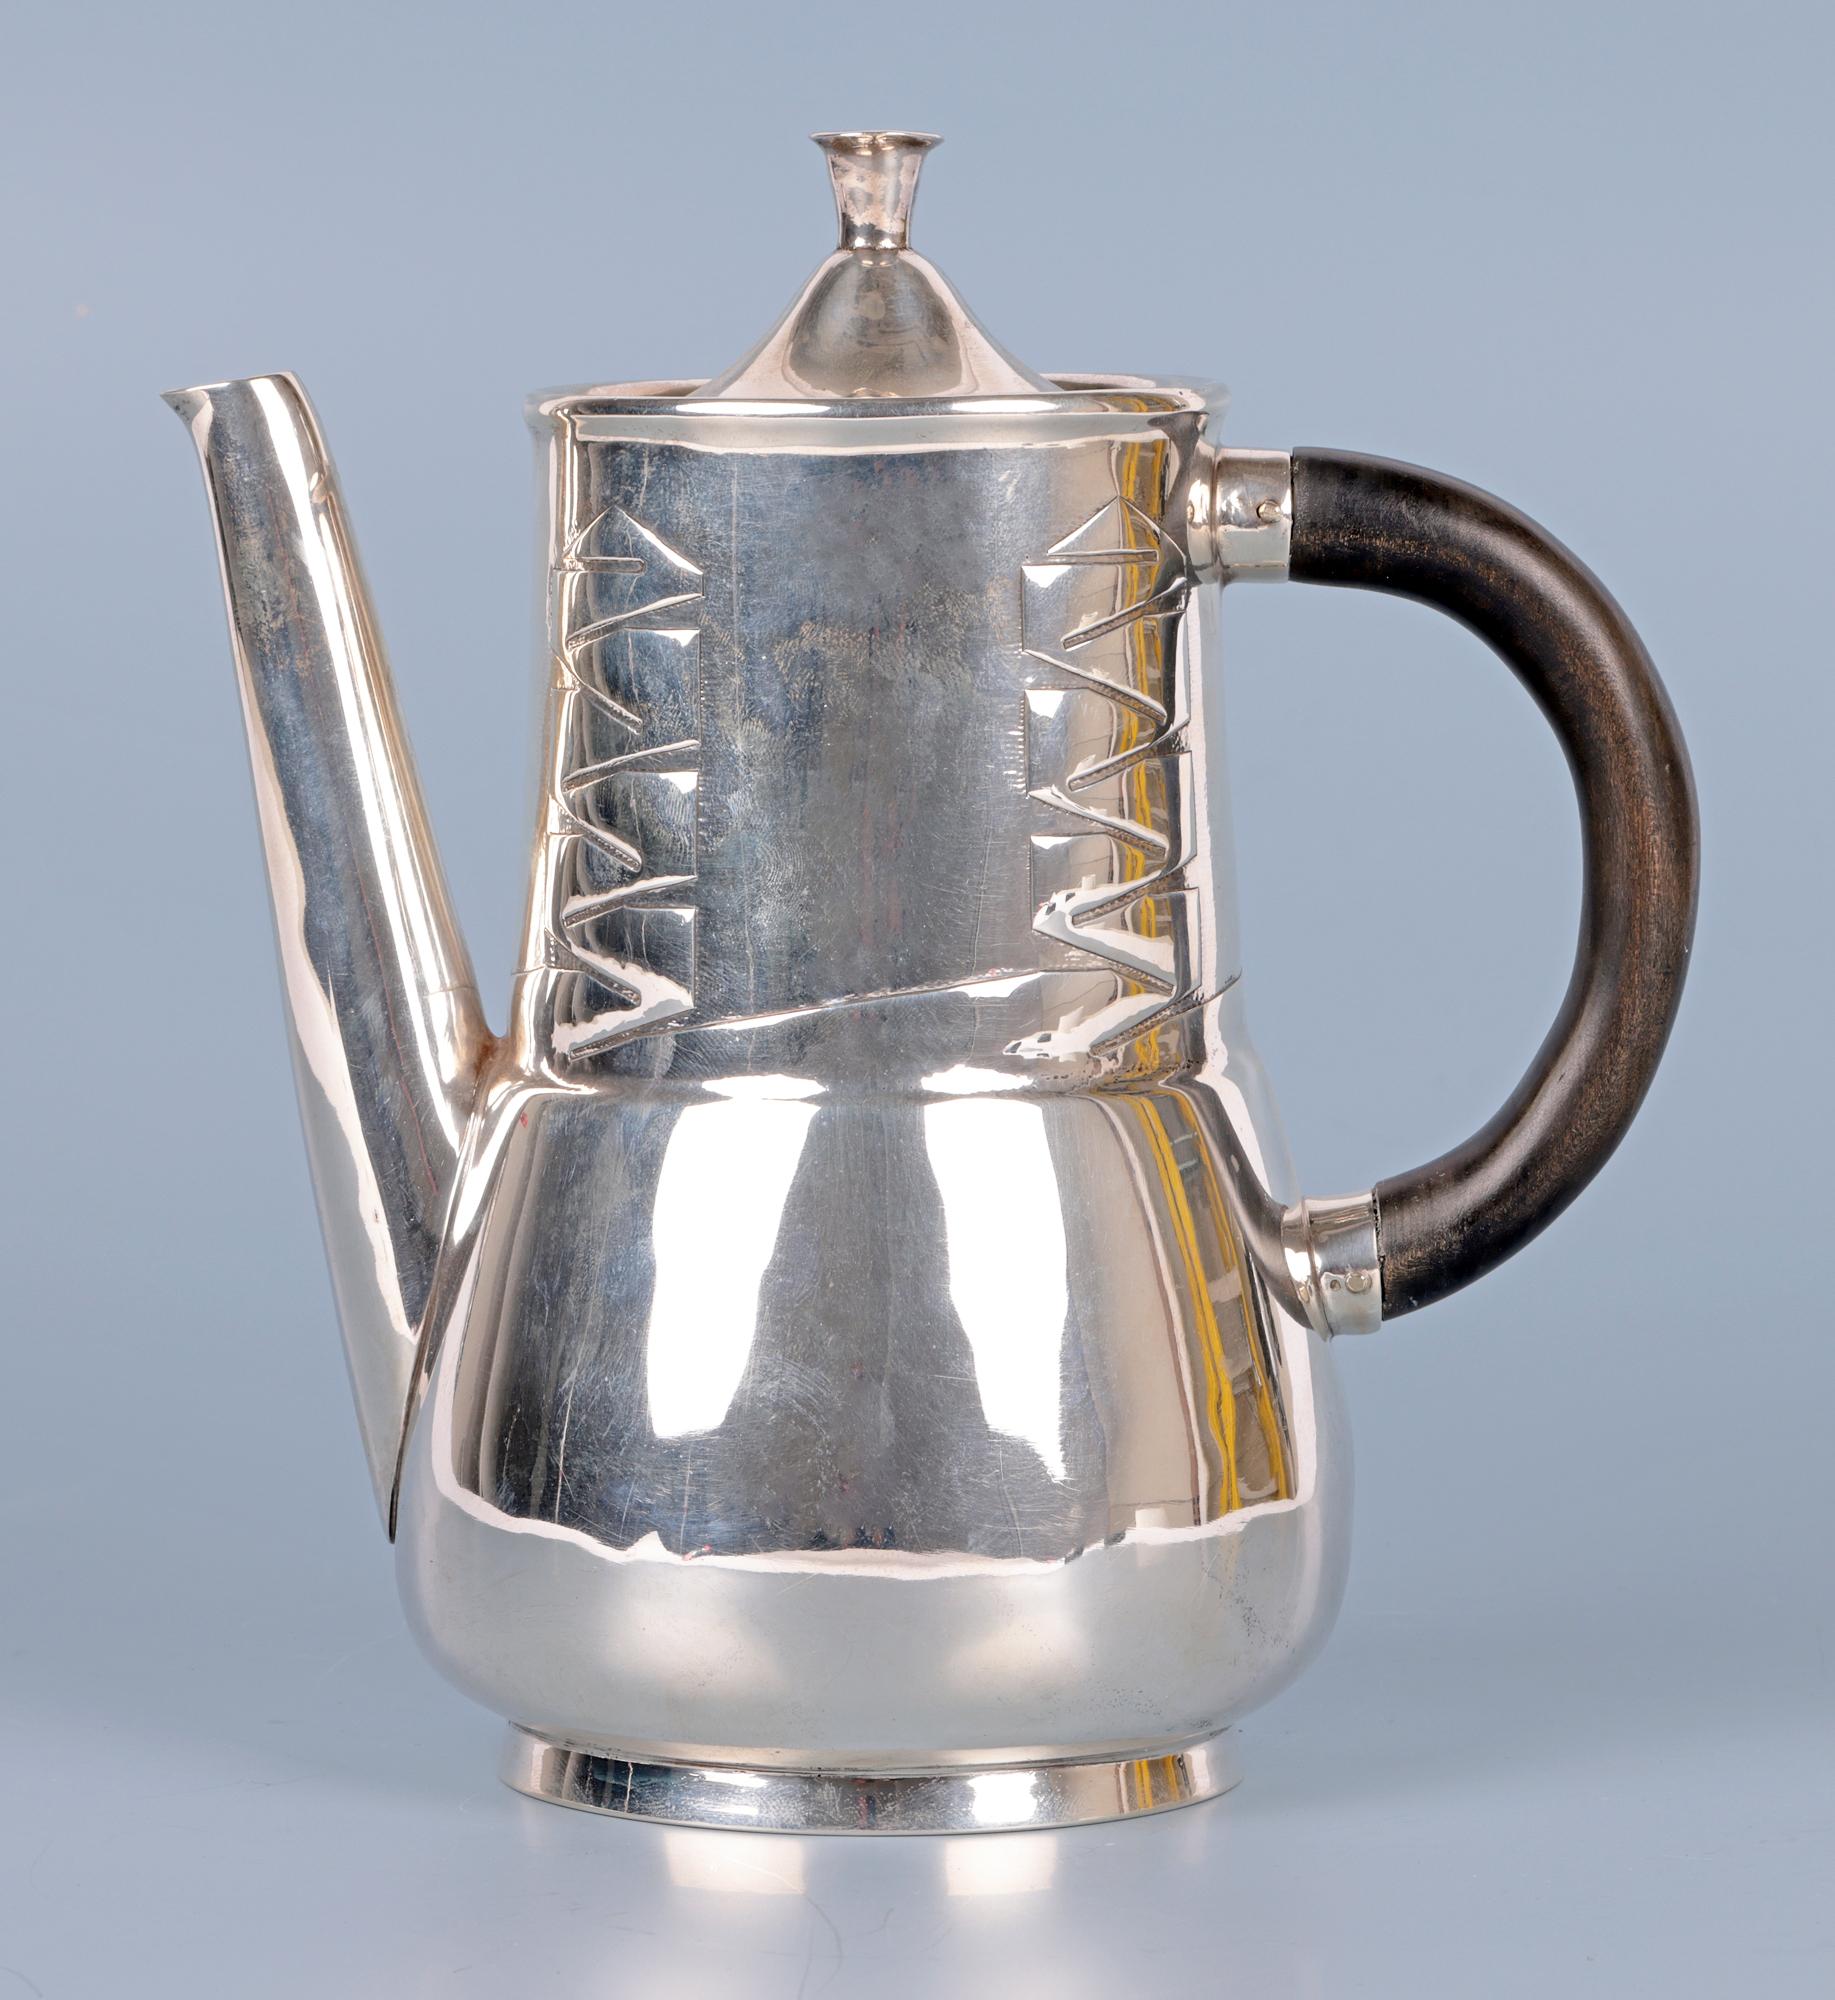  Archibald Knox Liberty & Co Silver Art Nouveau Silver Teapot For Sale 11